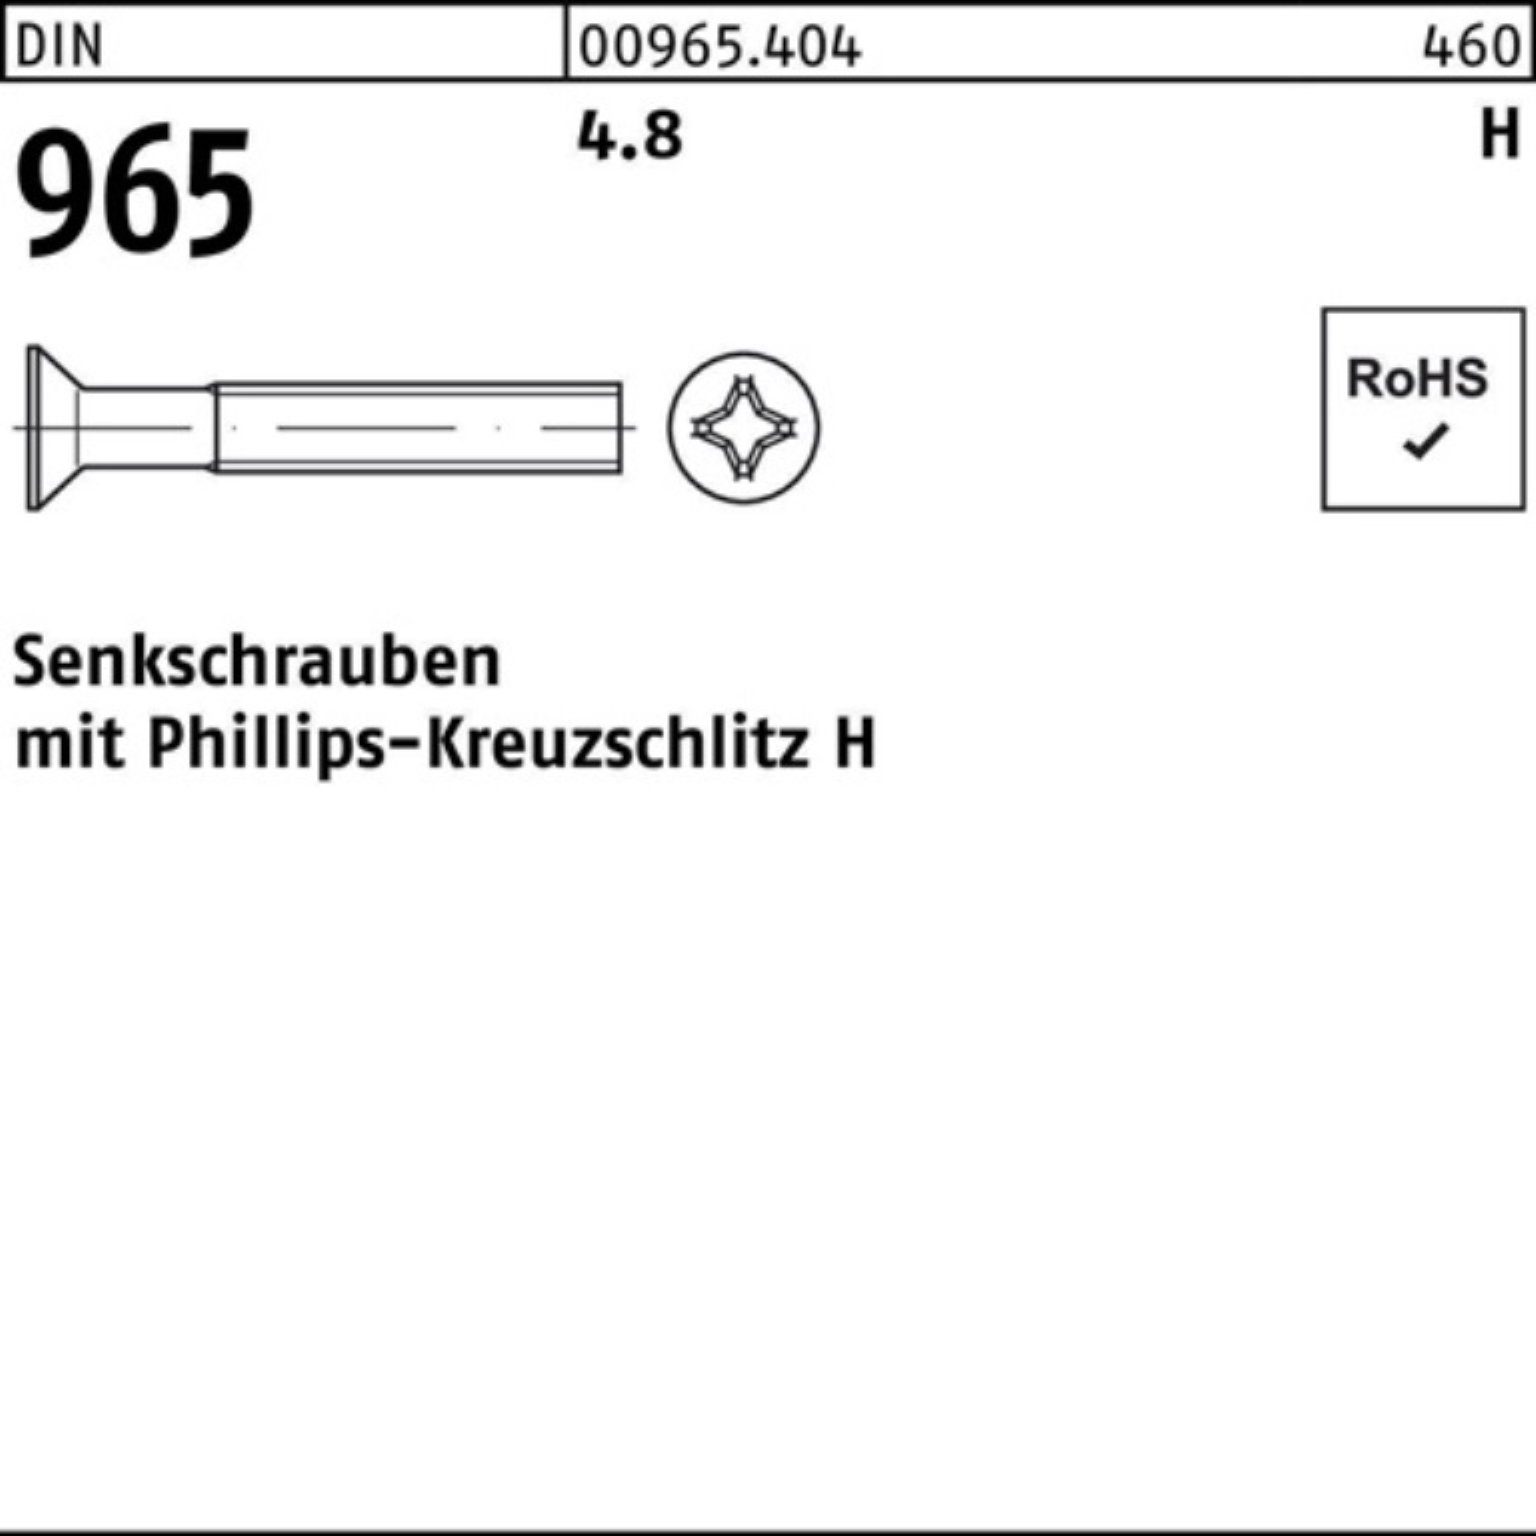 Reyher Senkschraube 2000er Pack 2000 DIN Stück M4x PH 965 DIN 965 8-H 4. Senkschraube 4.8